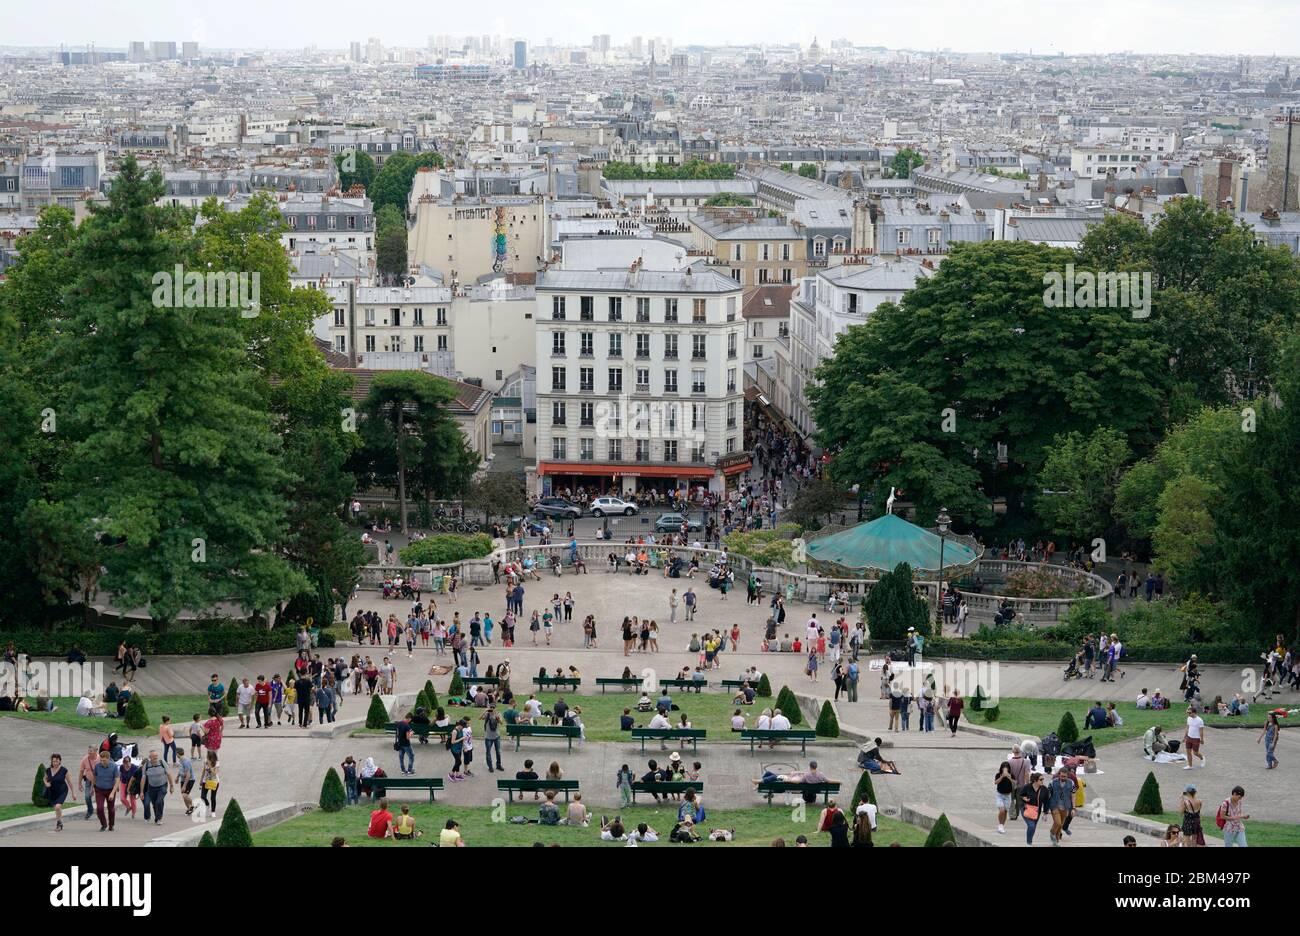 La vista della città di Parigi con i visitatori in piazza Louise Michel in primo piano dalla Basilica du Sacré-Cœur de Montmartre.Paris.France Foto Stock